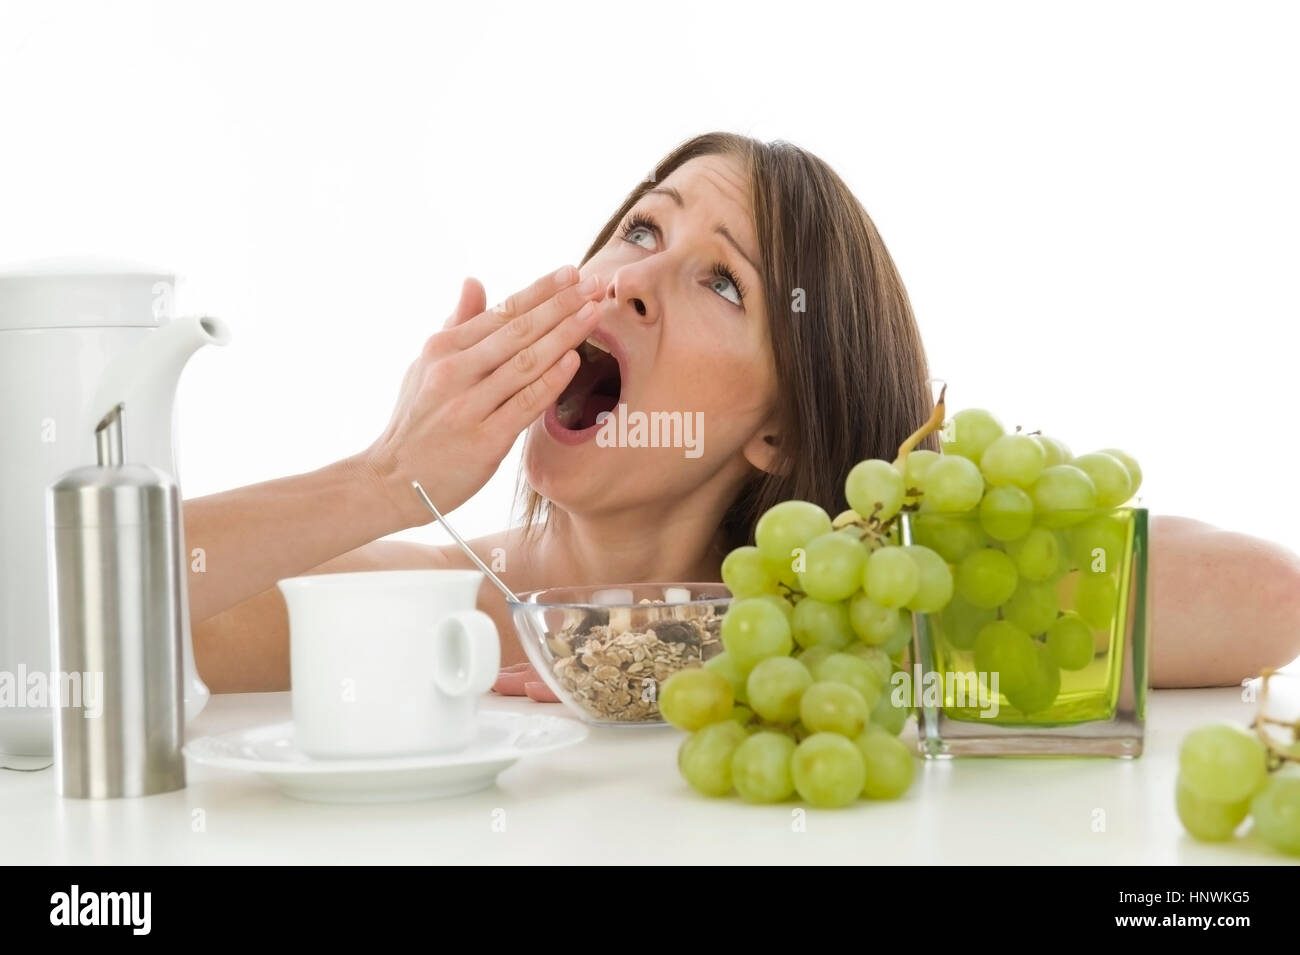 Model release, Unausgeschlafene, junge Frau gaehnt beim Fruehstueck - tired woman at breakfast Stock Photo